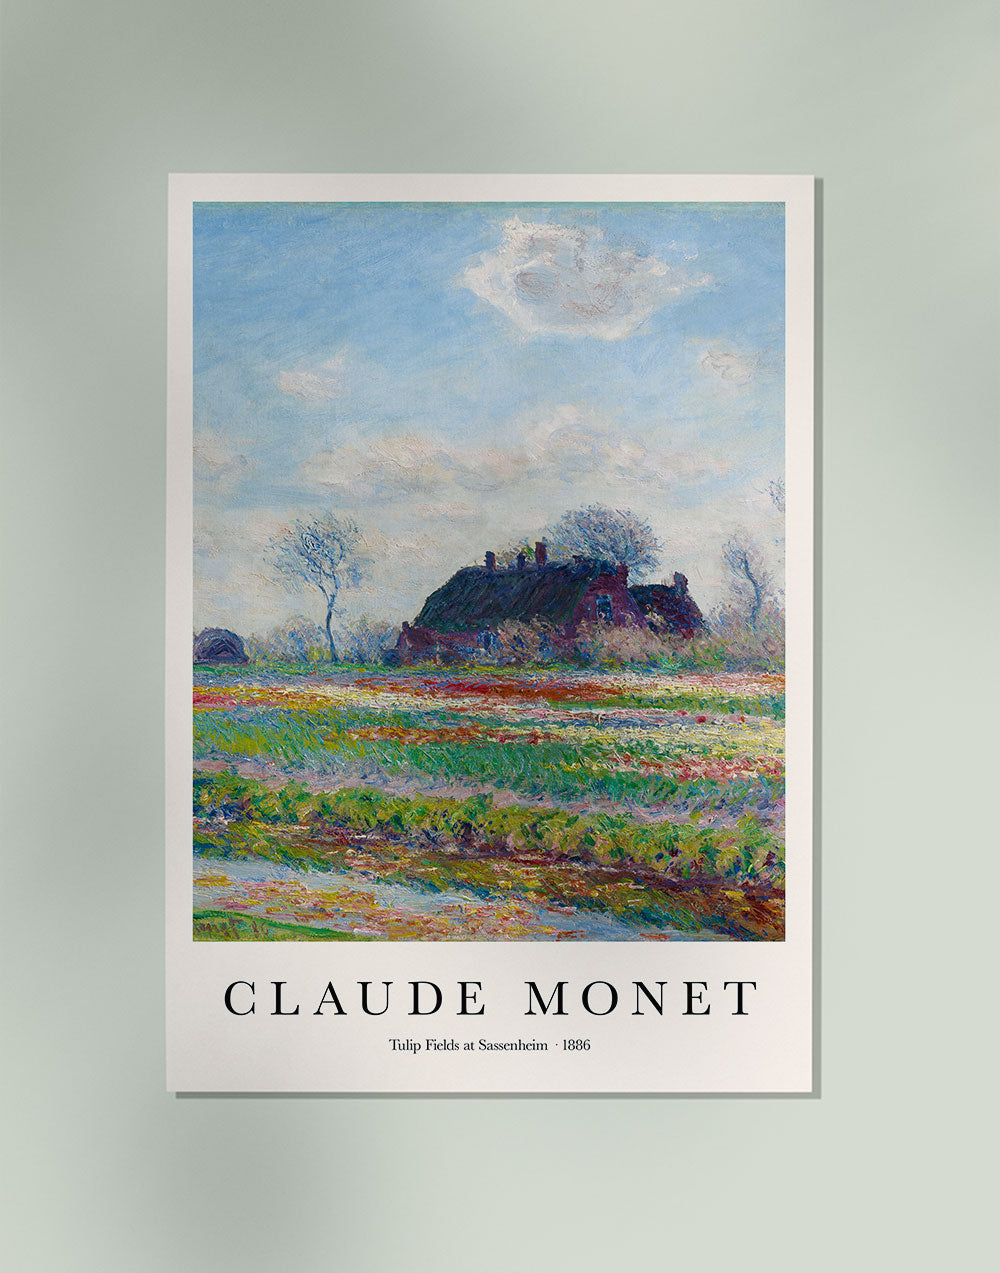 Tulip Fields at Sassenheim by Claude Monet Art Exhibition Poster